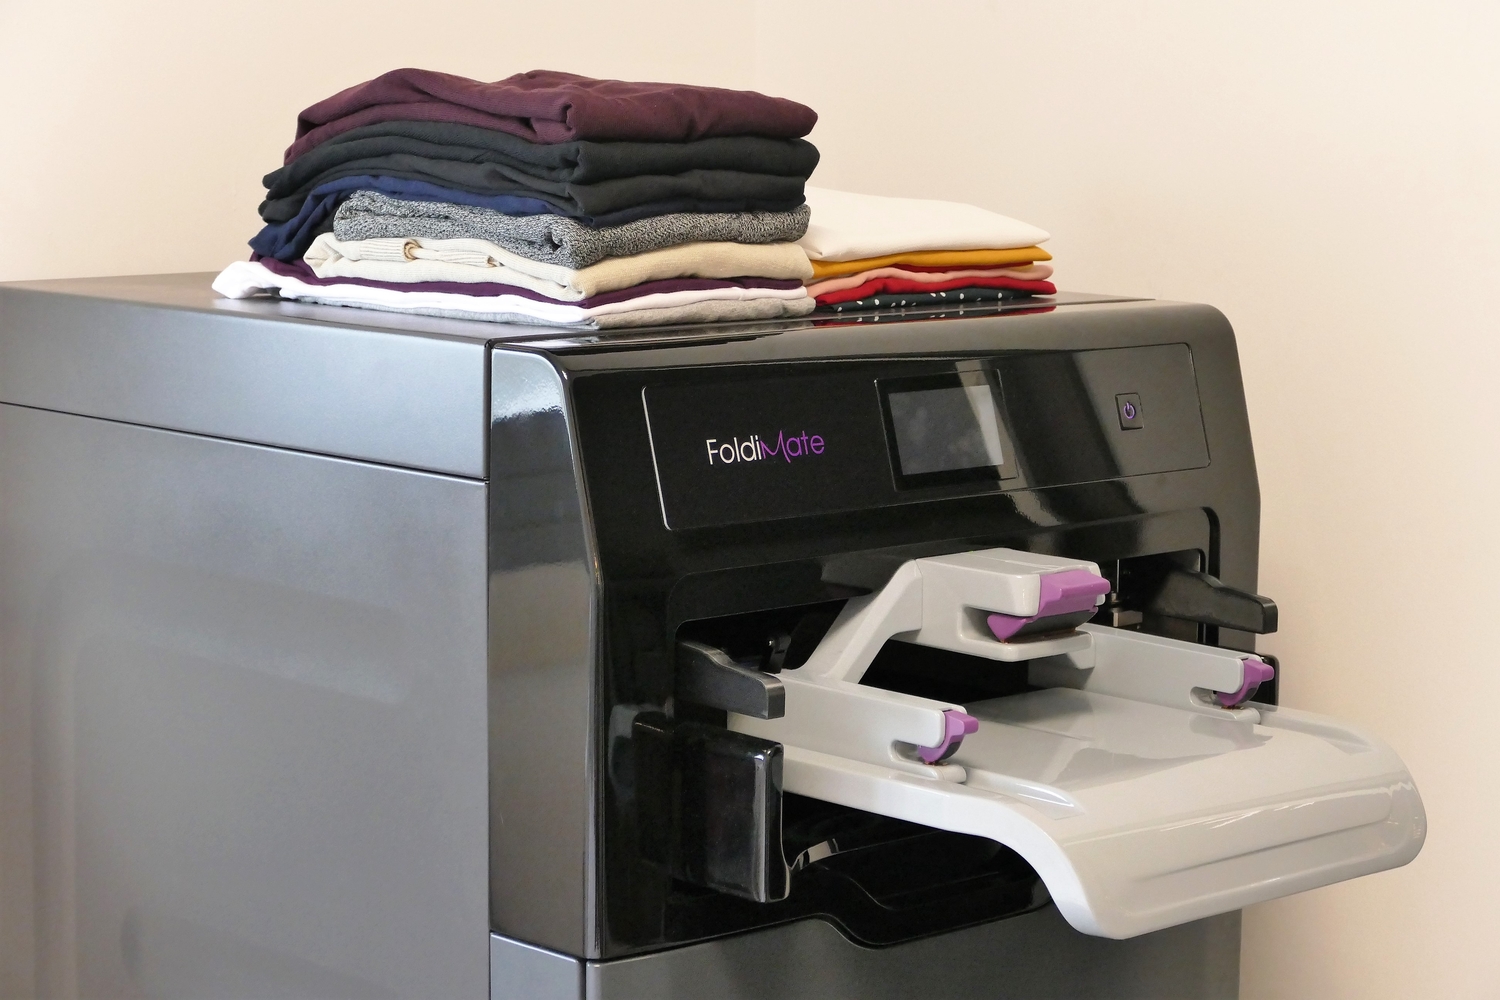 foldimates laundry folding machine is cool but it necessary ces 2019 foldimate 20198